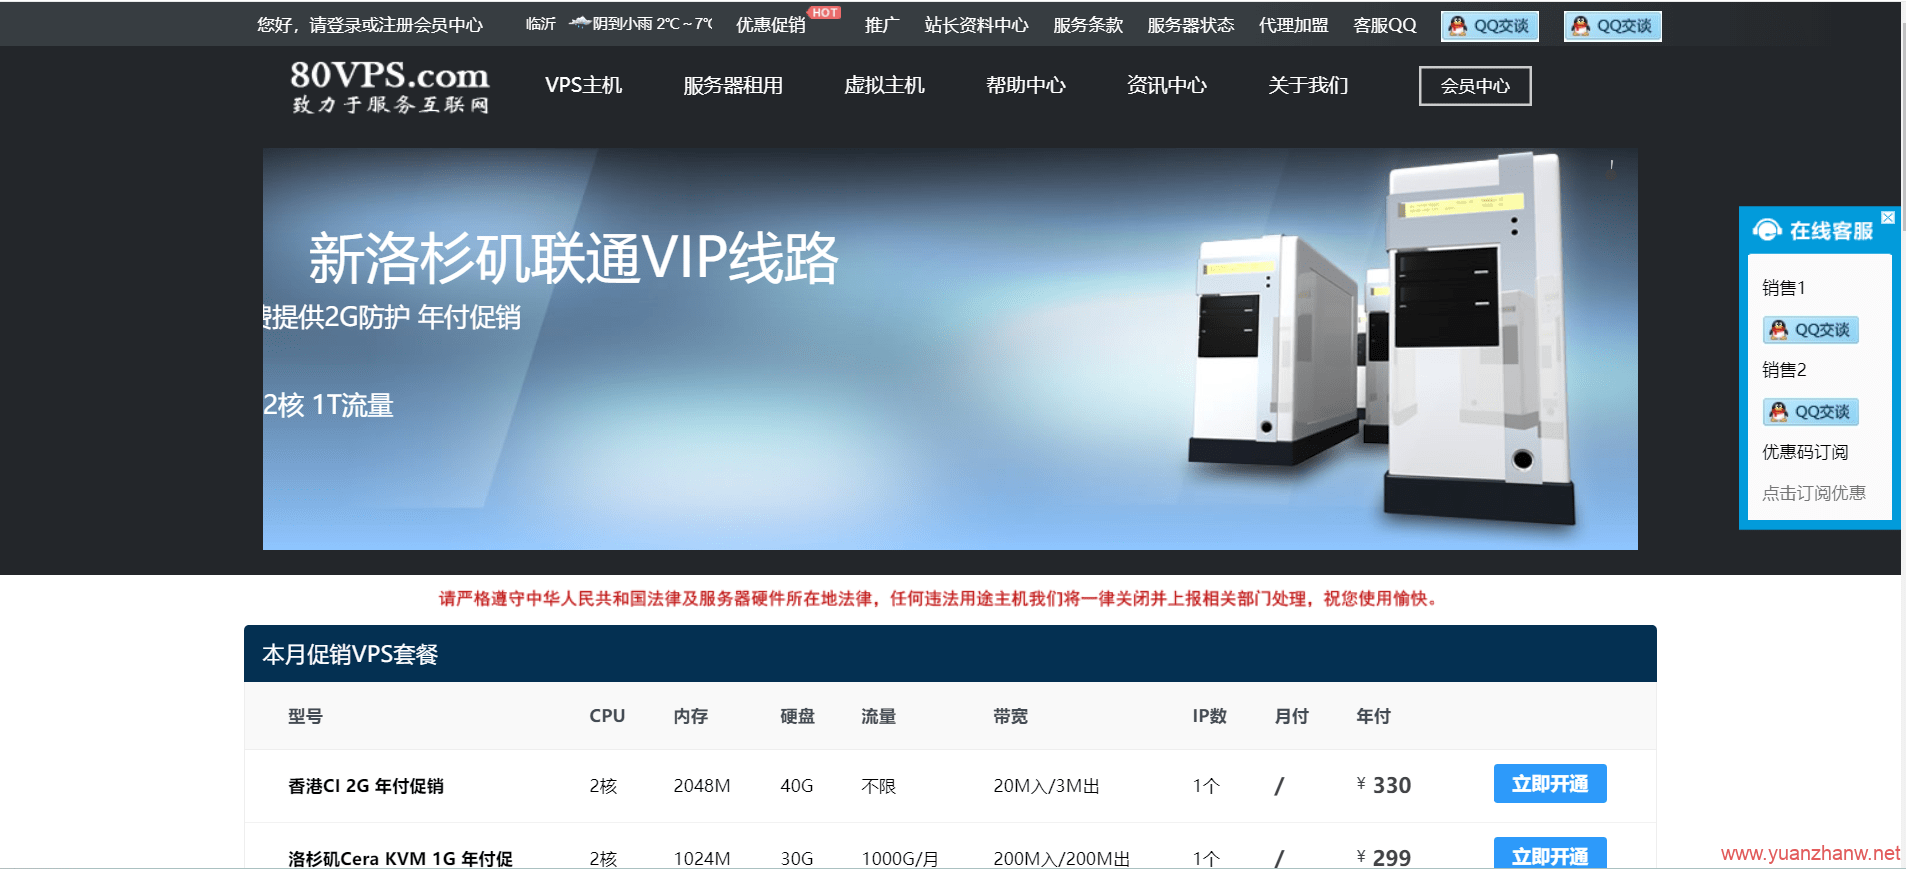 %80VPS：年付特价促销活动，香港vps，日本vps，美国vps，韩国vps，新加坡vps，最低299元/年起-猿站网-插图